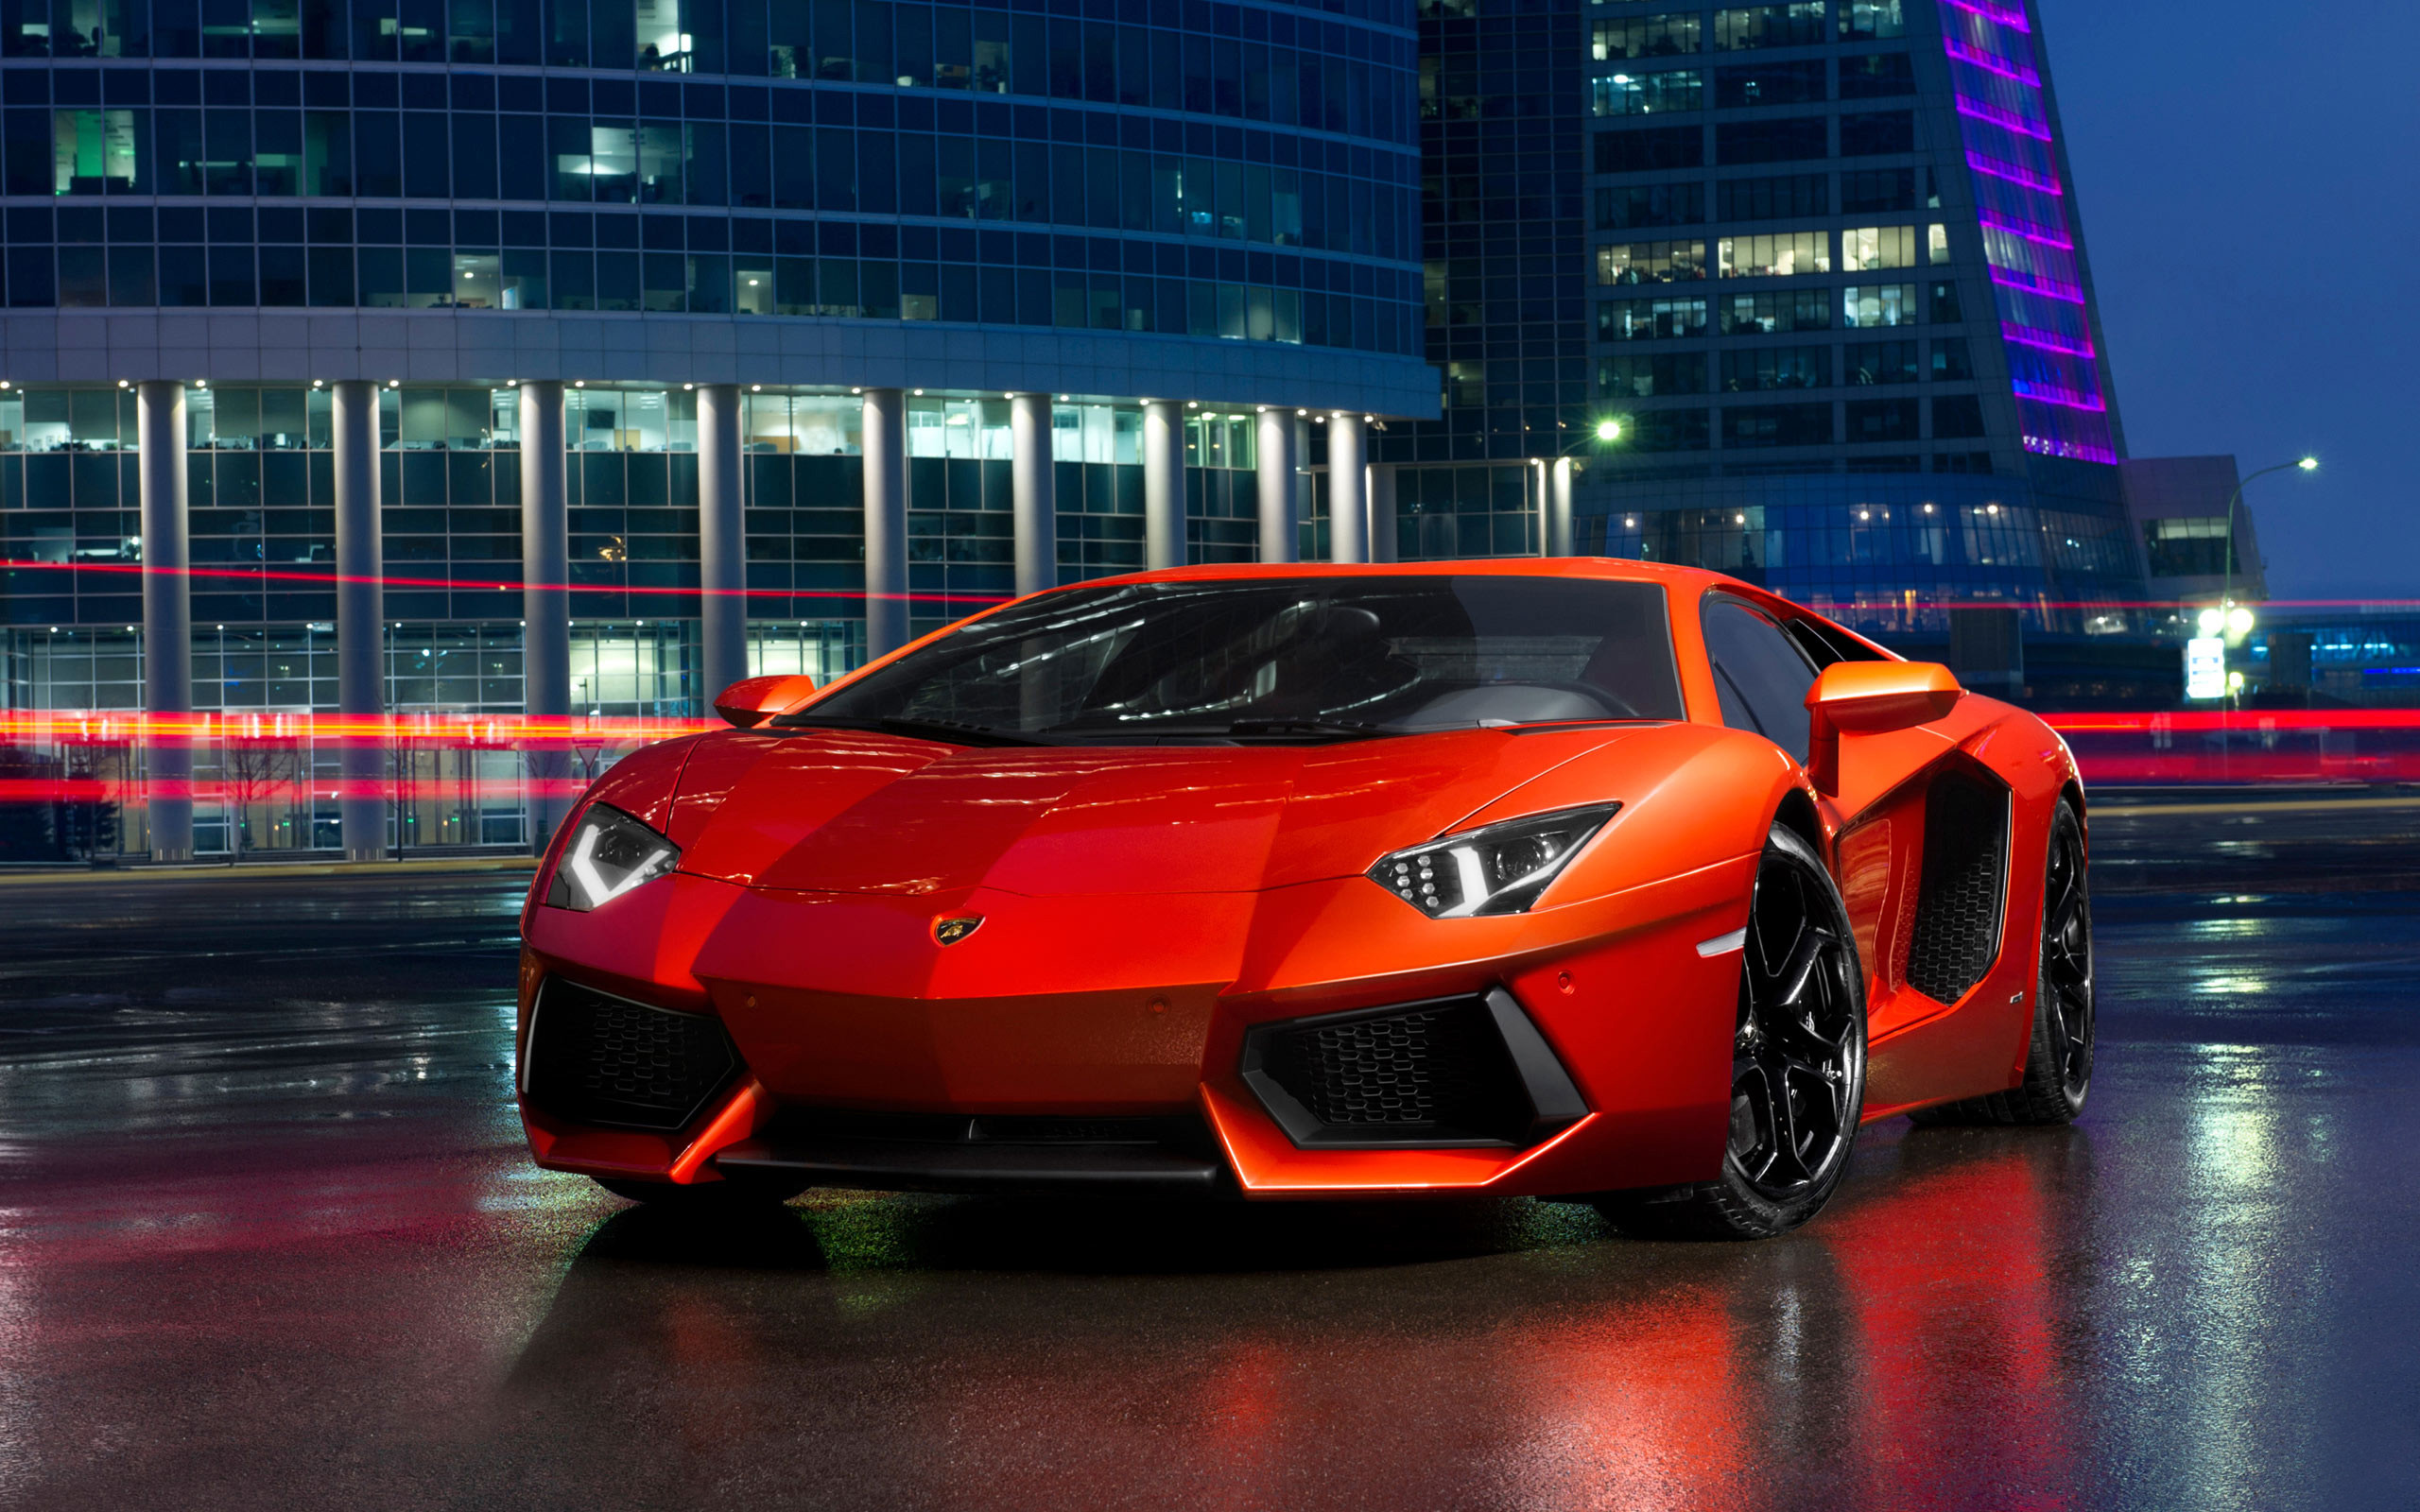 Cảm giác chạm tay vào Lamborghini chắc chắn sẽ khiến bạn đắm say và muốn sống trong một thế giới của các siêu xe xa hoa. Với hình nền Lamborghini đầy màu sắc và sáng tạo, bạn sẽ cảm thấy như ngồi trên chiếc xe này và thực sự đắm mình vào không gian đầy cảm hứng.